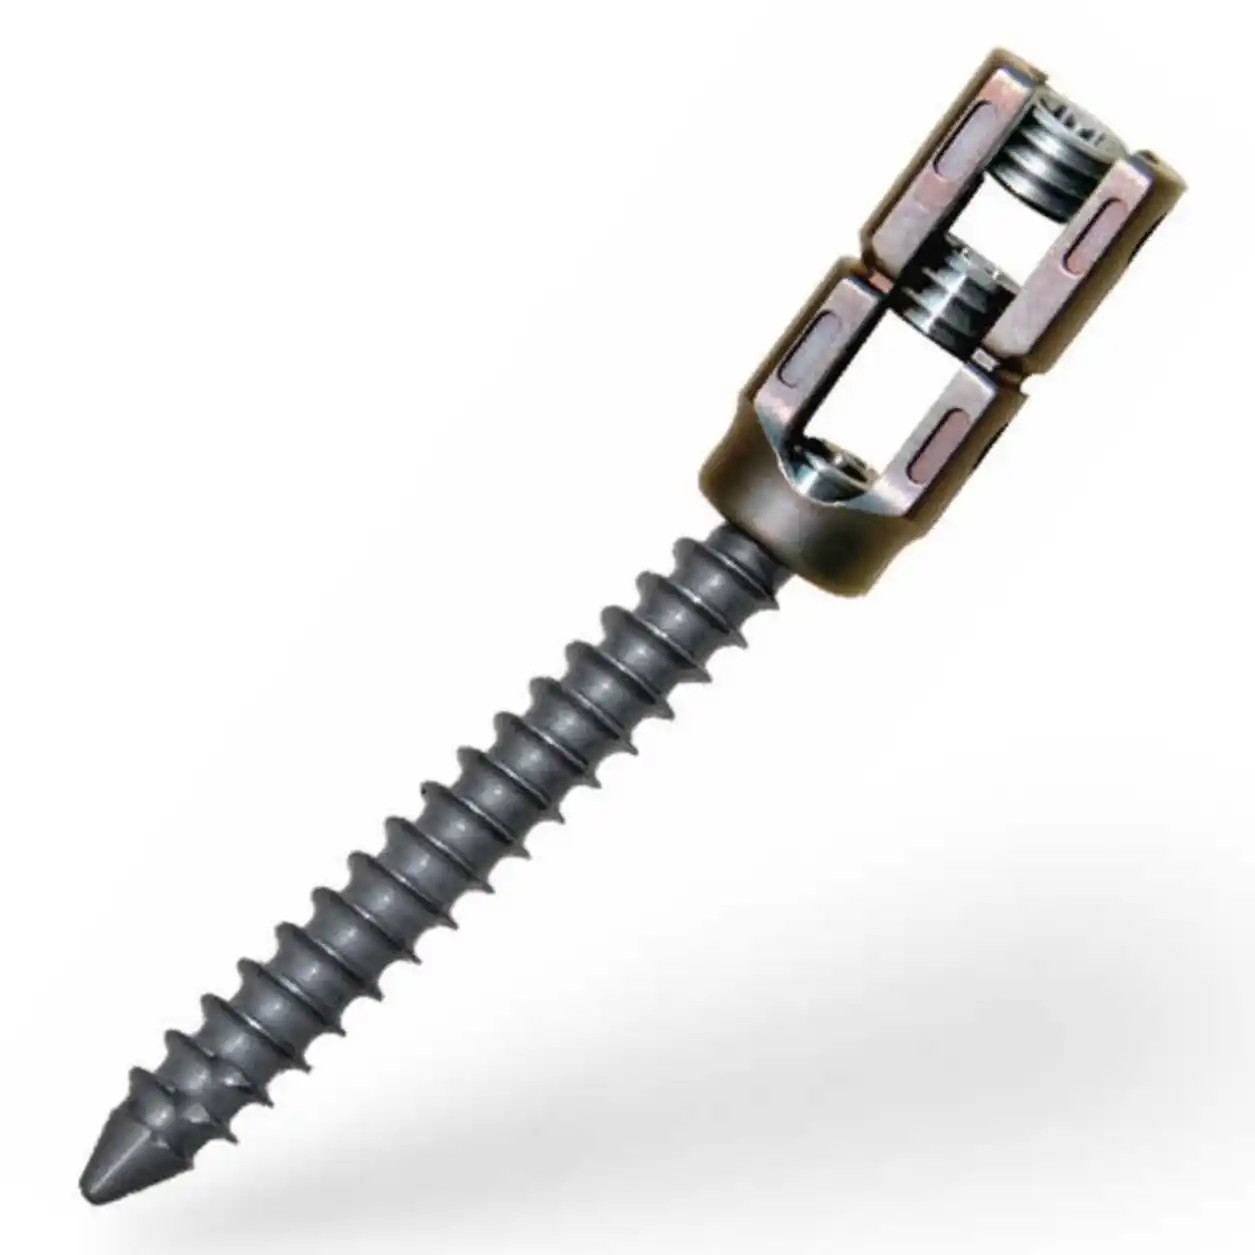 Implantes ortopédicos médicos Jinlu de alta calidad e instrumento de clavos elásticos quirúrgicos